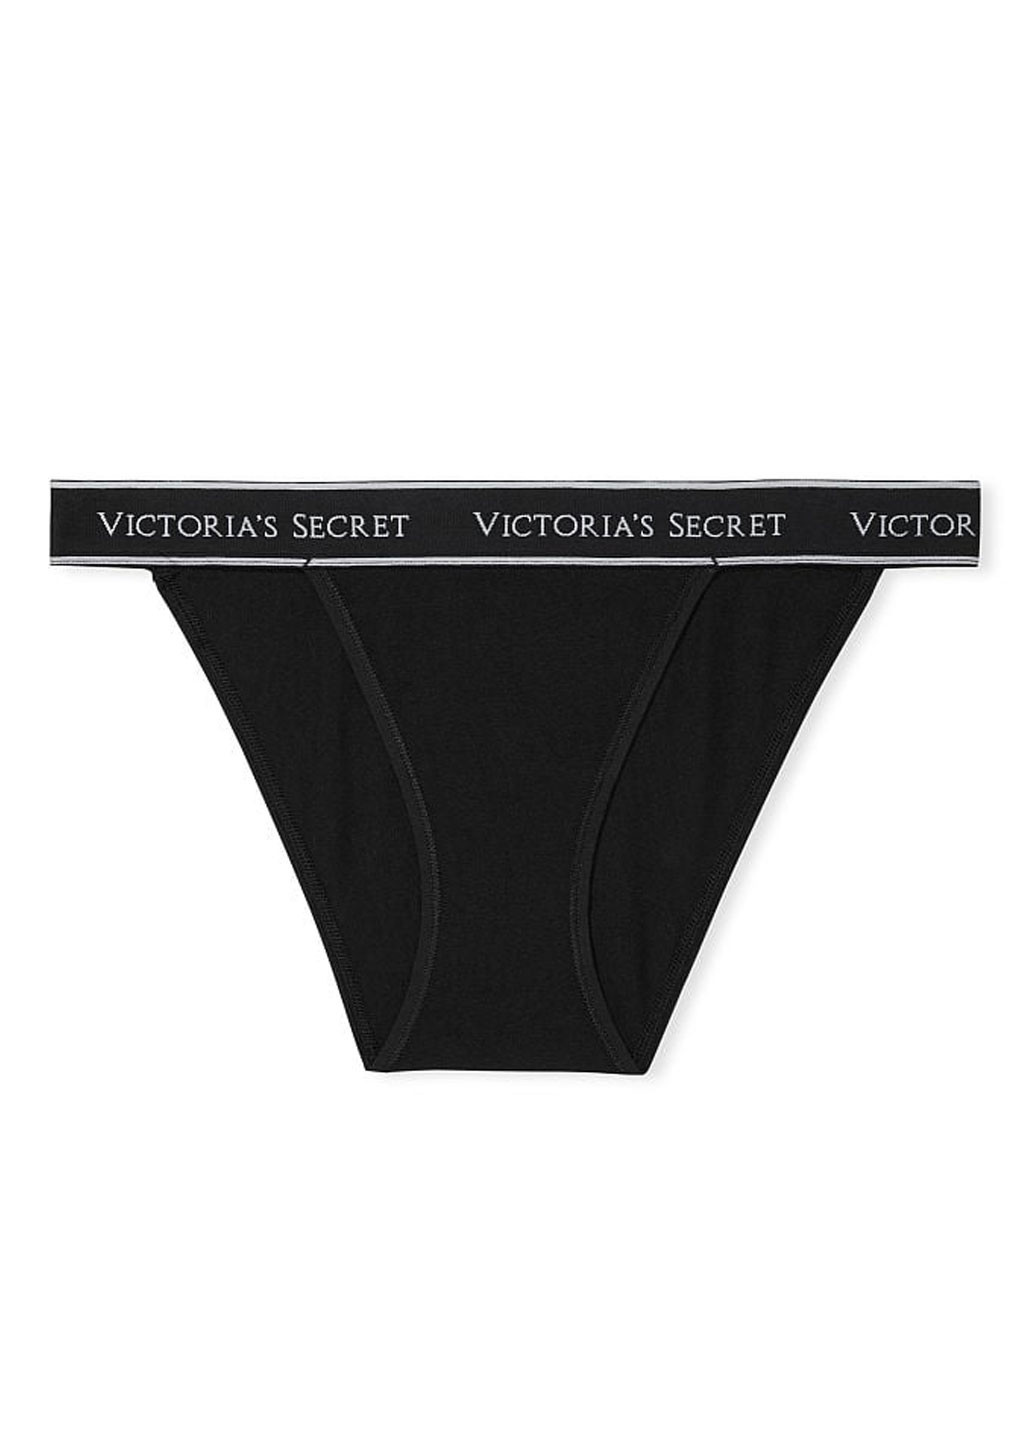 Трусики Victoria's Secret бикини логотипы чёрные домашние хлопок, трикотаж